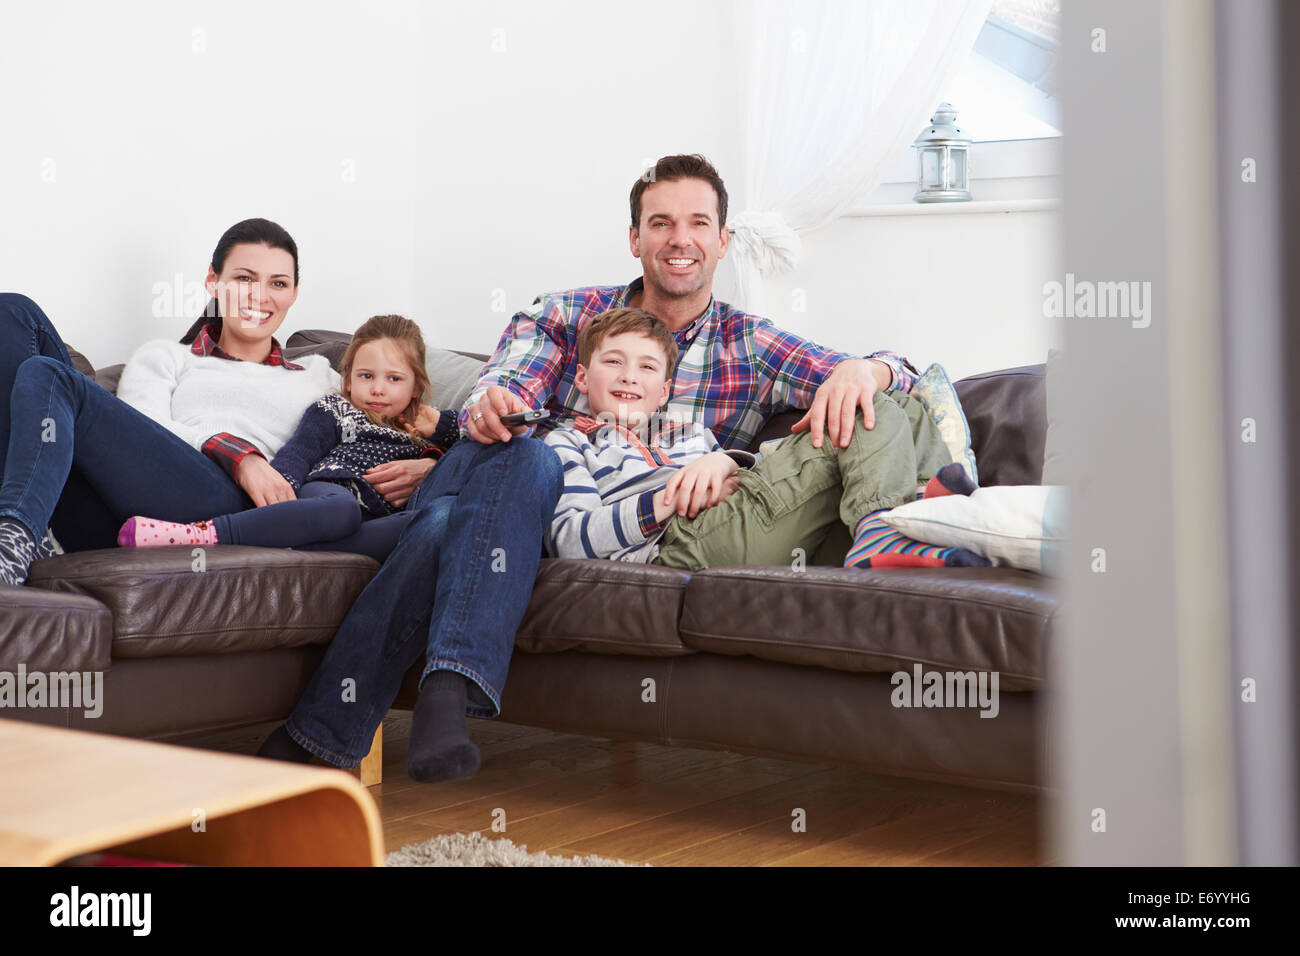 Familia relajante adentro viendo televisión juntos Foto de stock